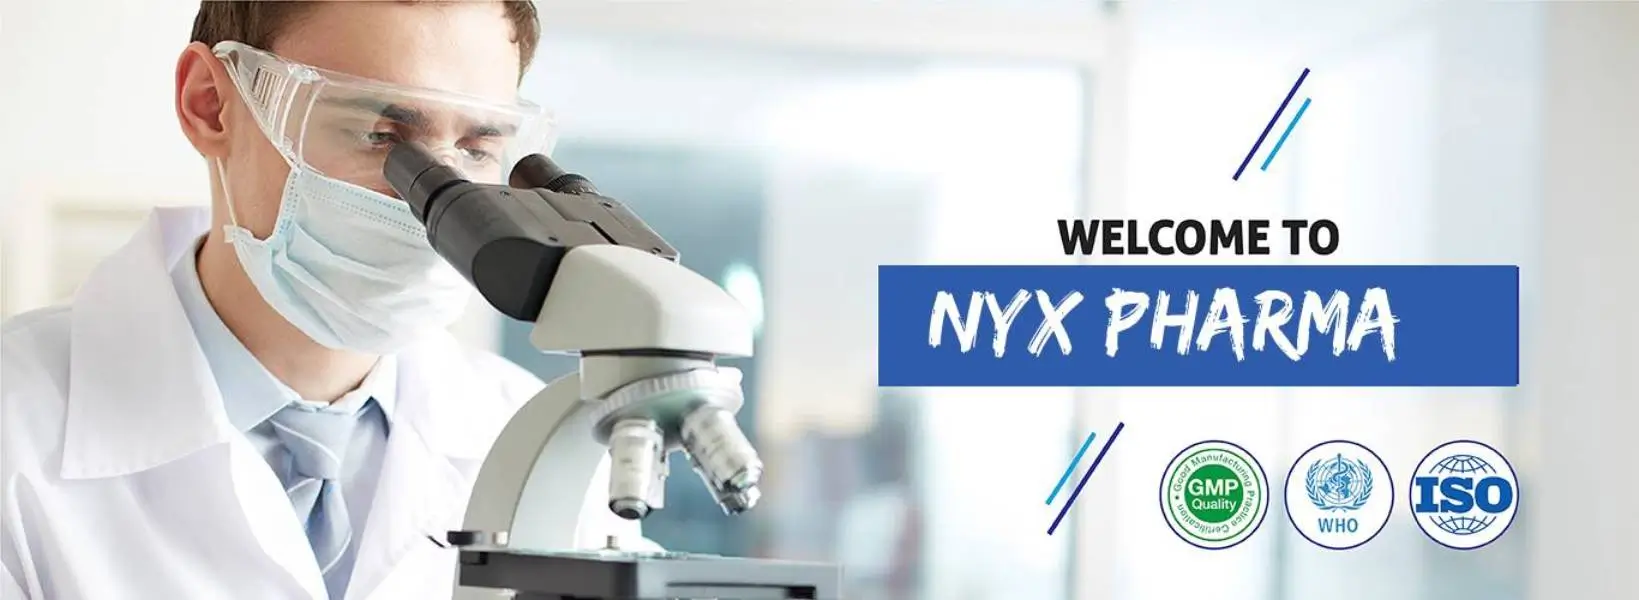 Welcome To NYX Pharma